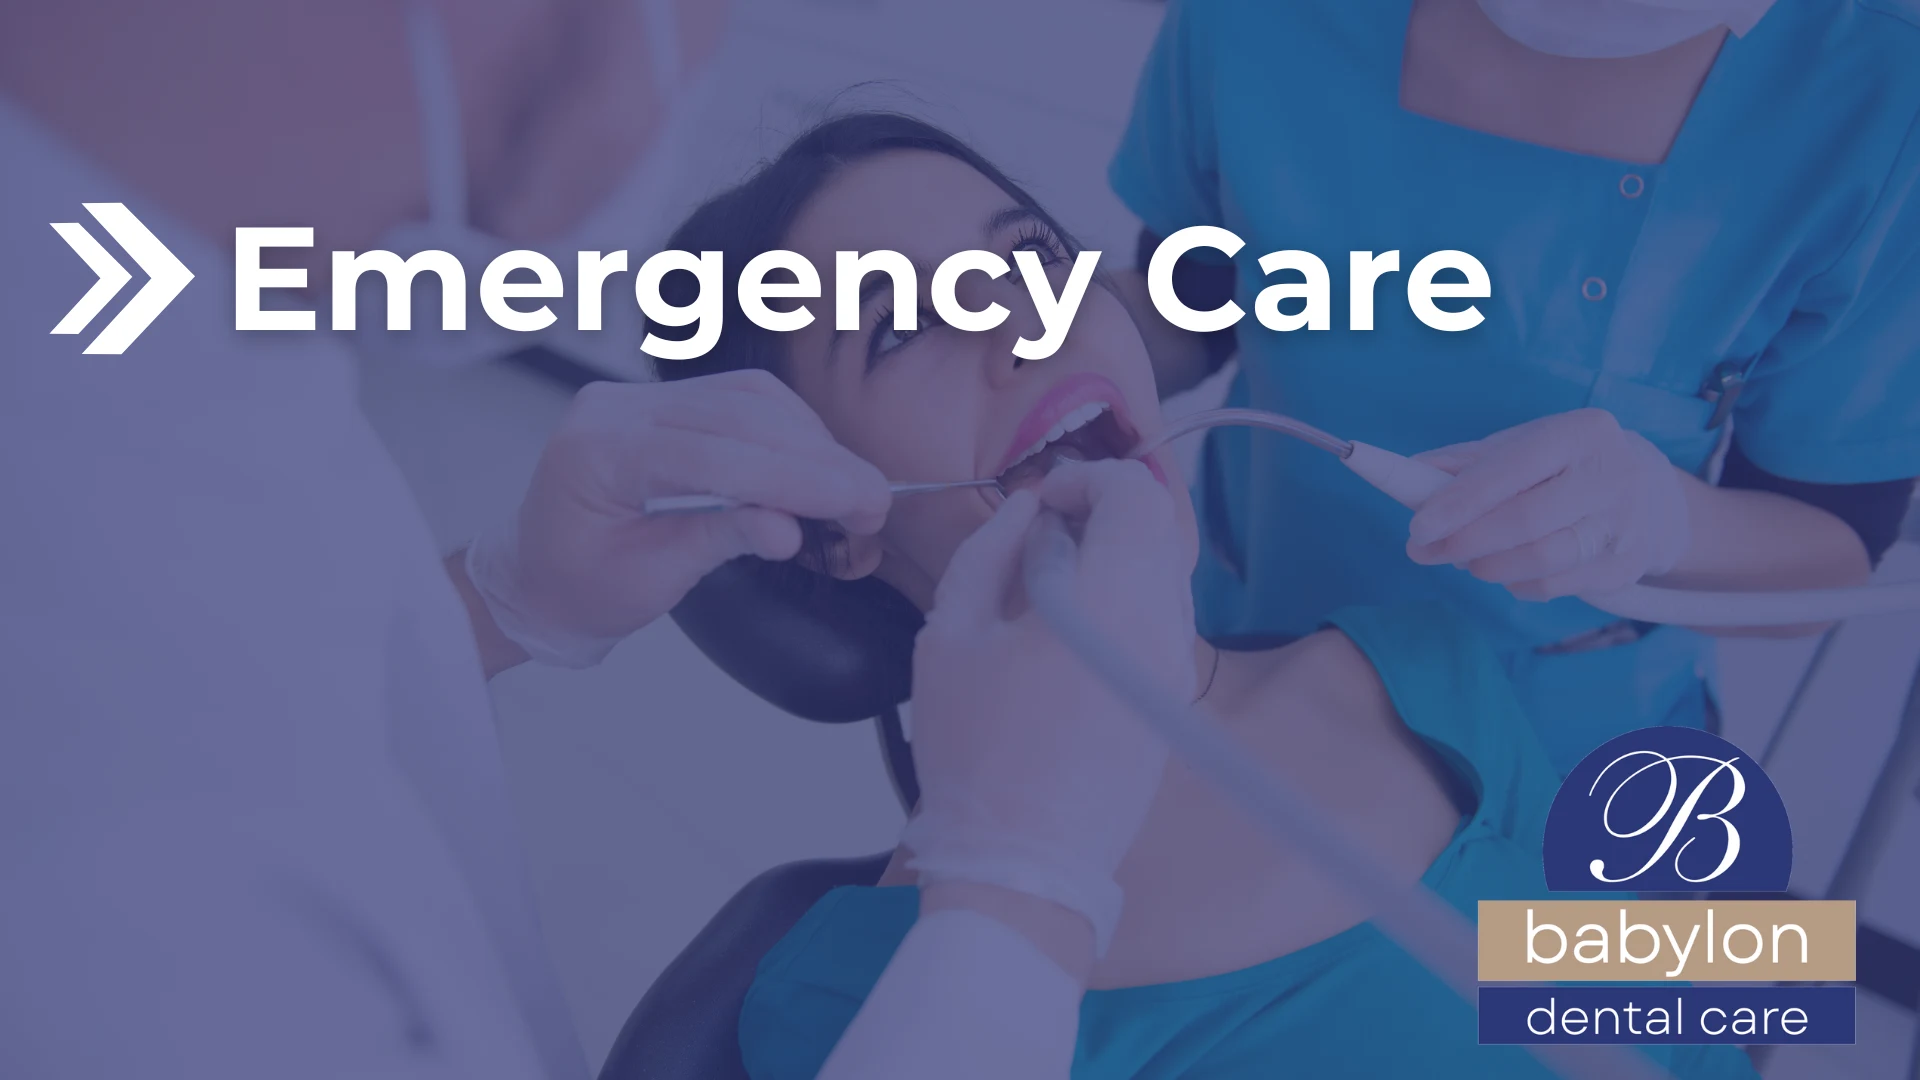 Emergency Care Image - new logo